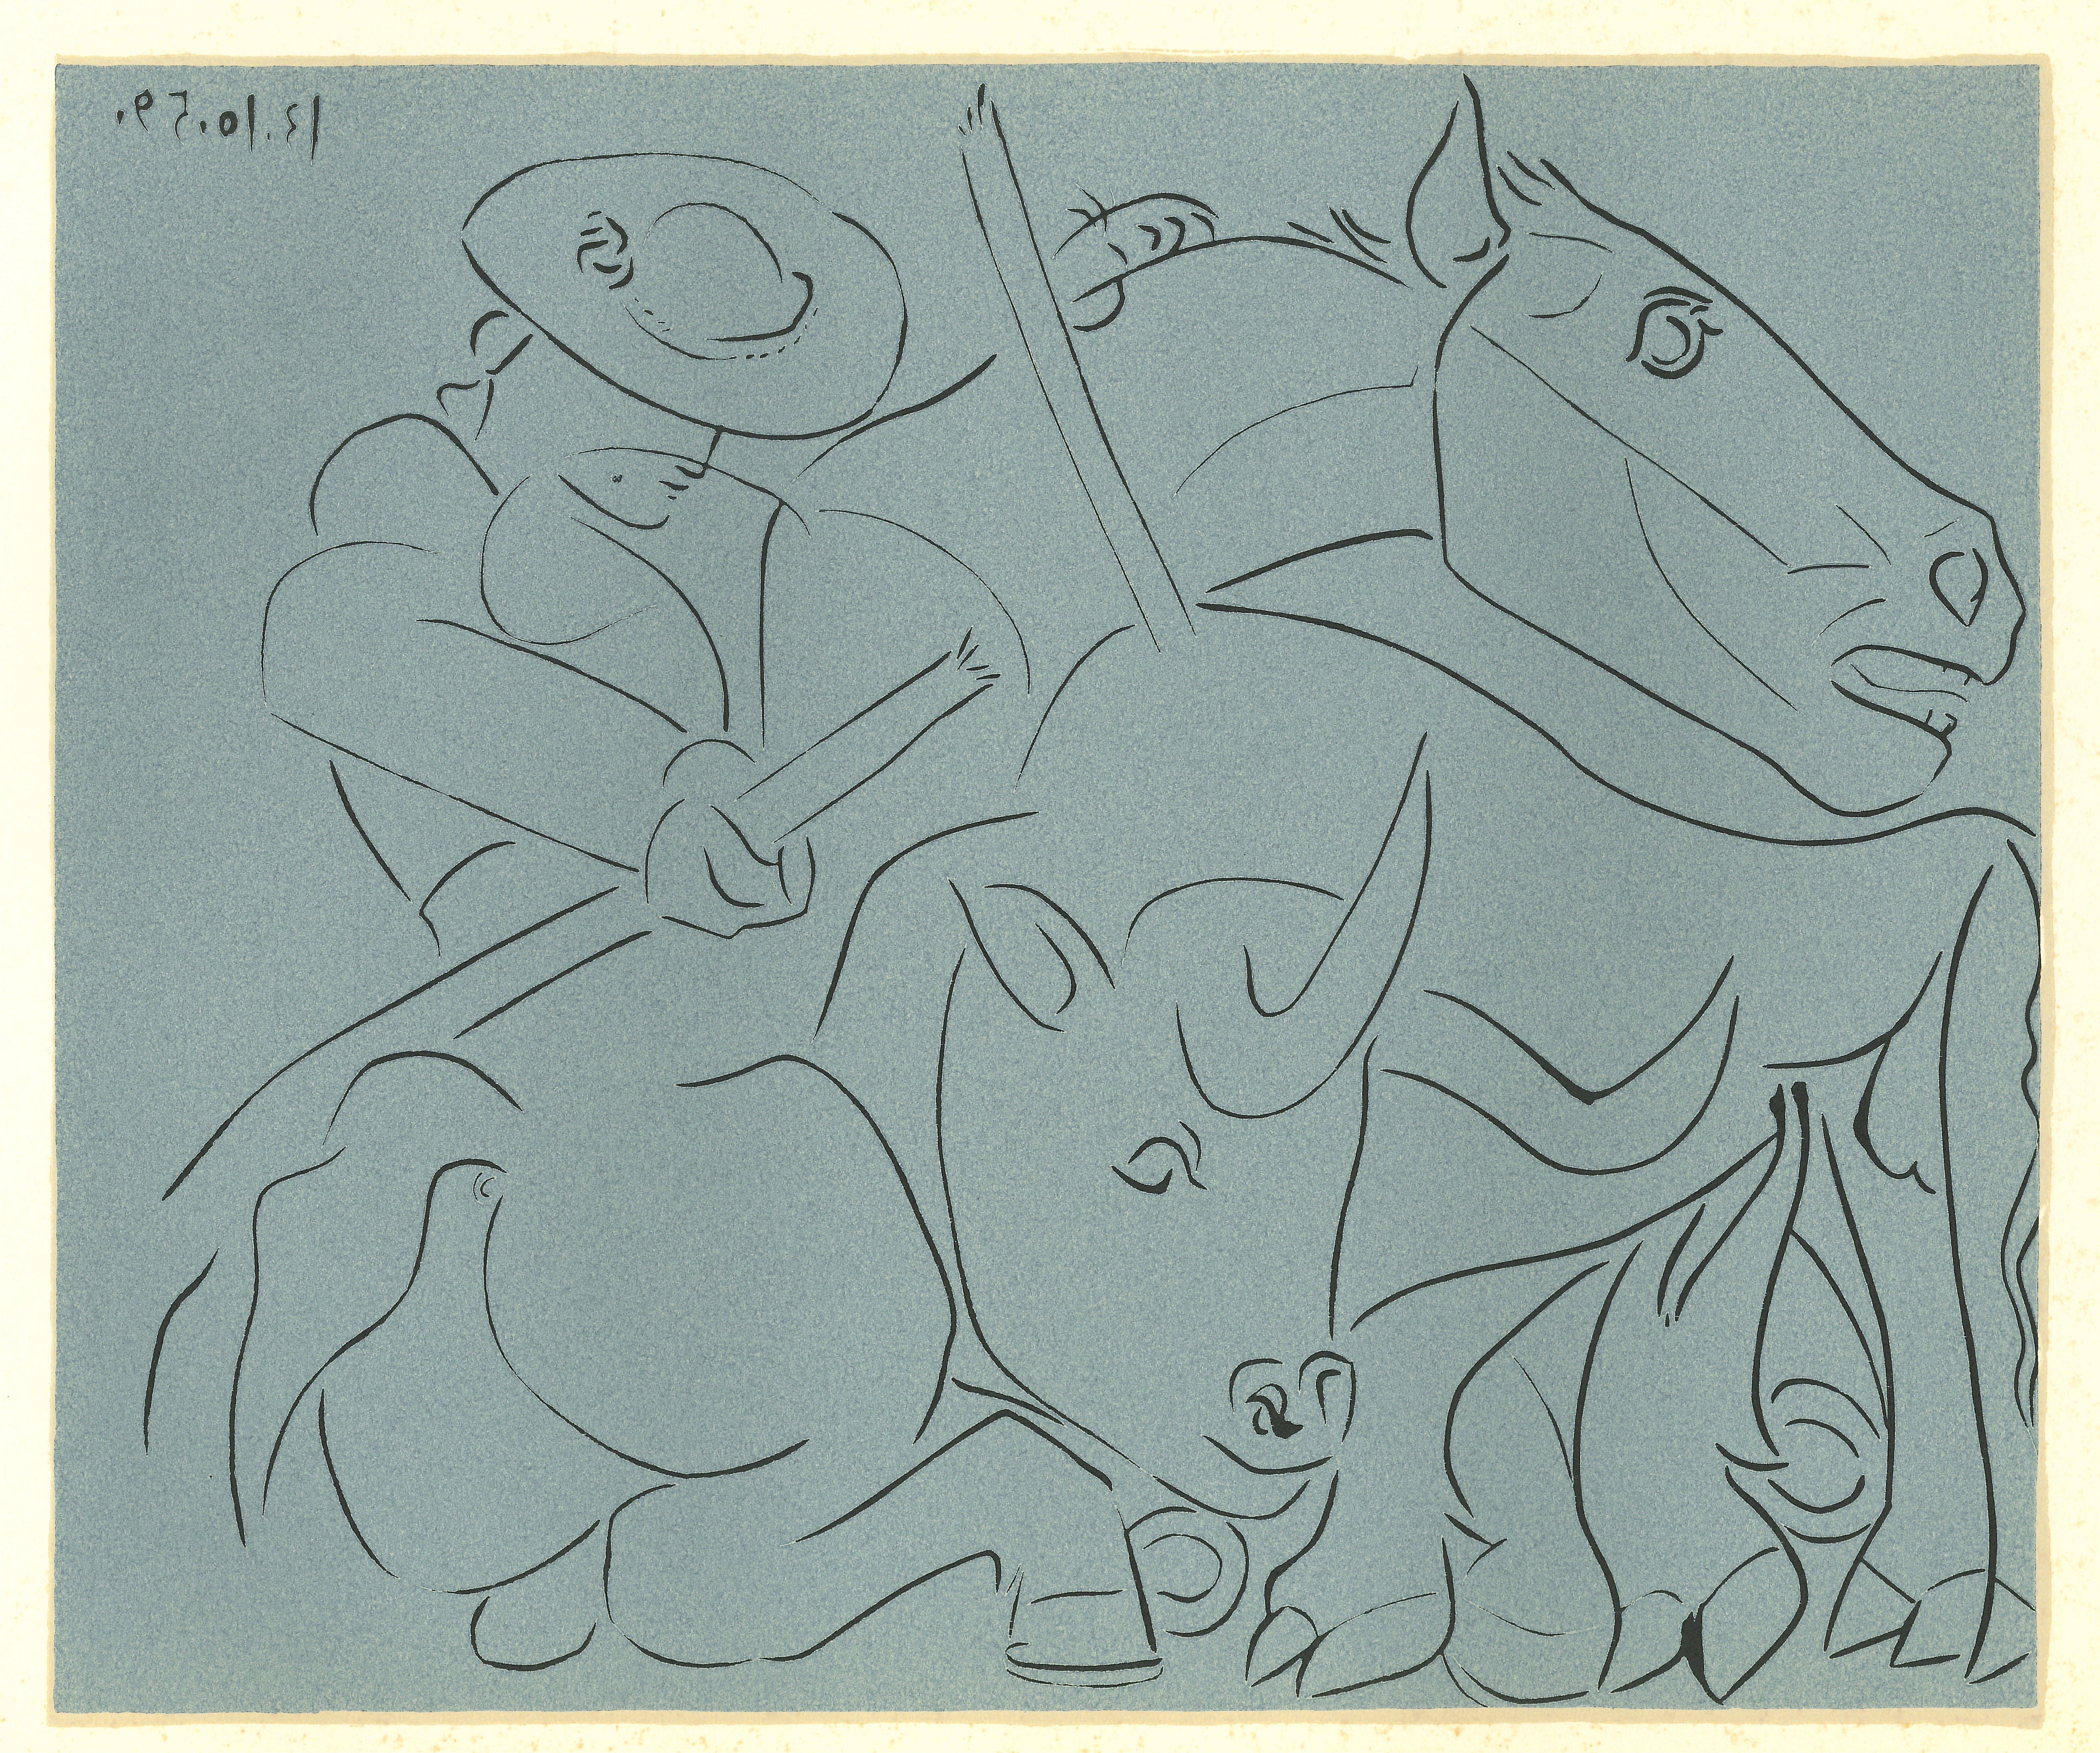 La Pique Cassée - Print Reproduction After Pablo Picasso - 1962